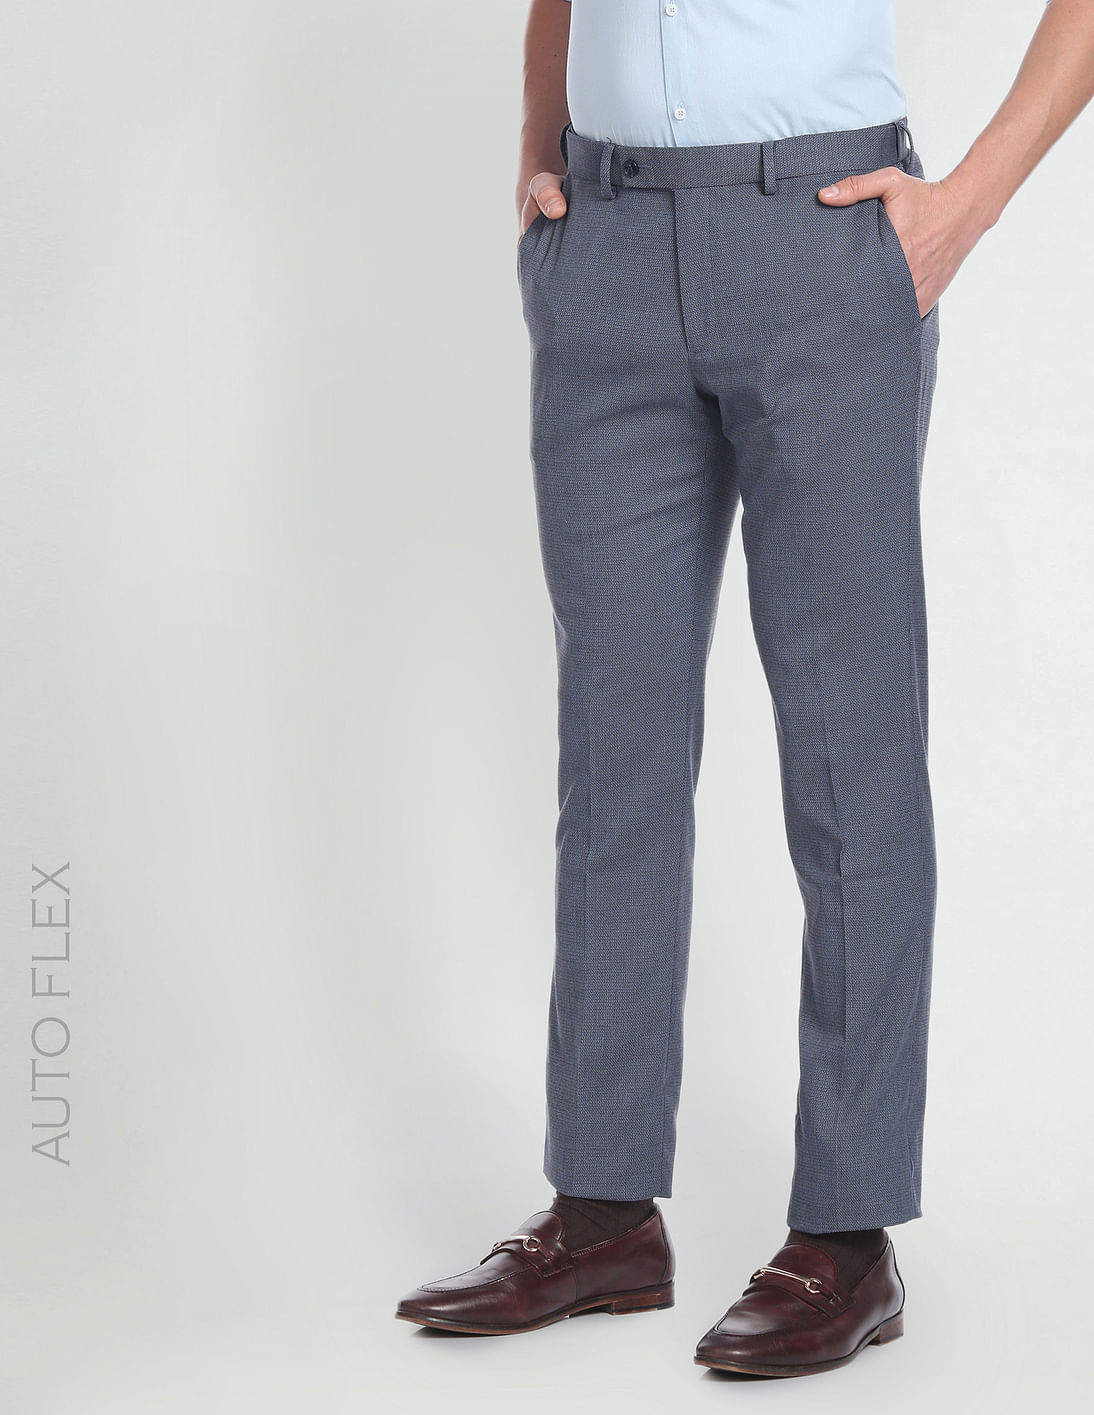 Buy Arrow Patterned Dobby Autoflex Trousers - NNNOW.com